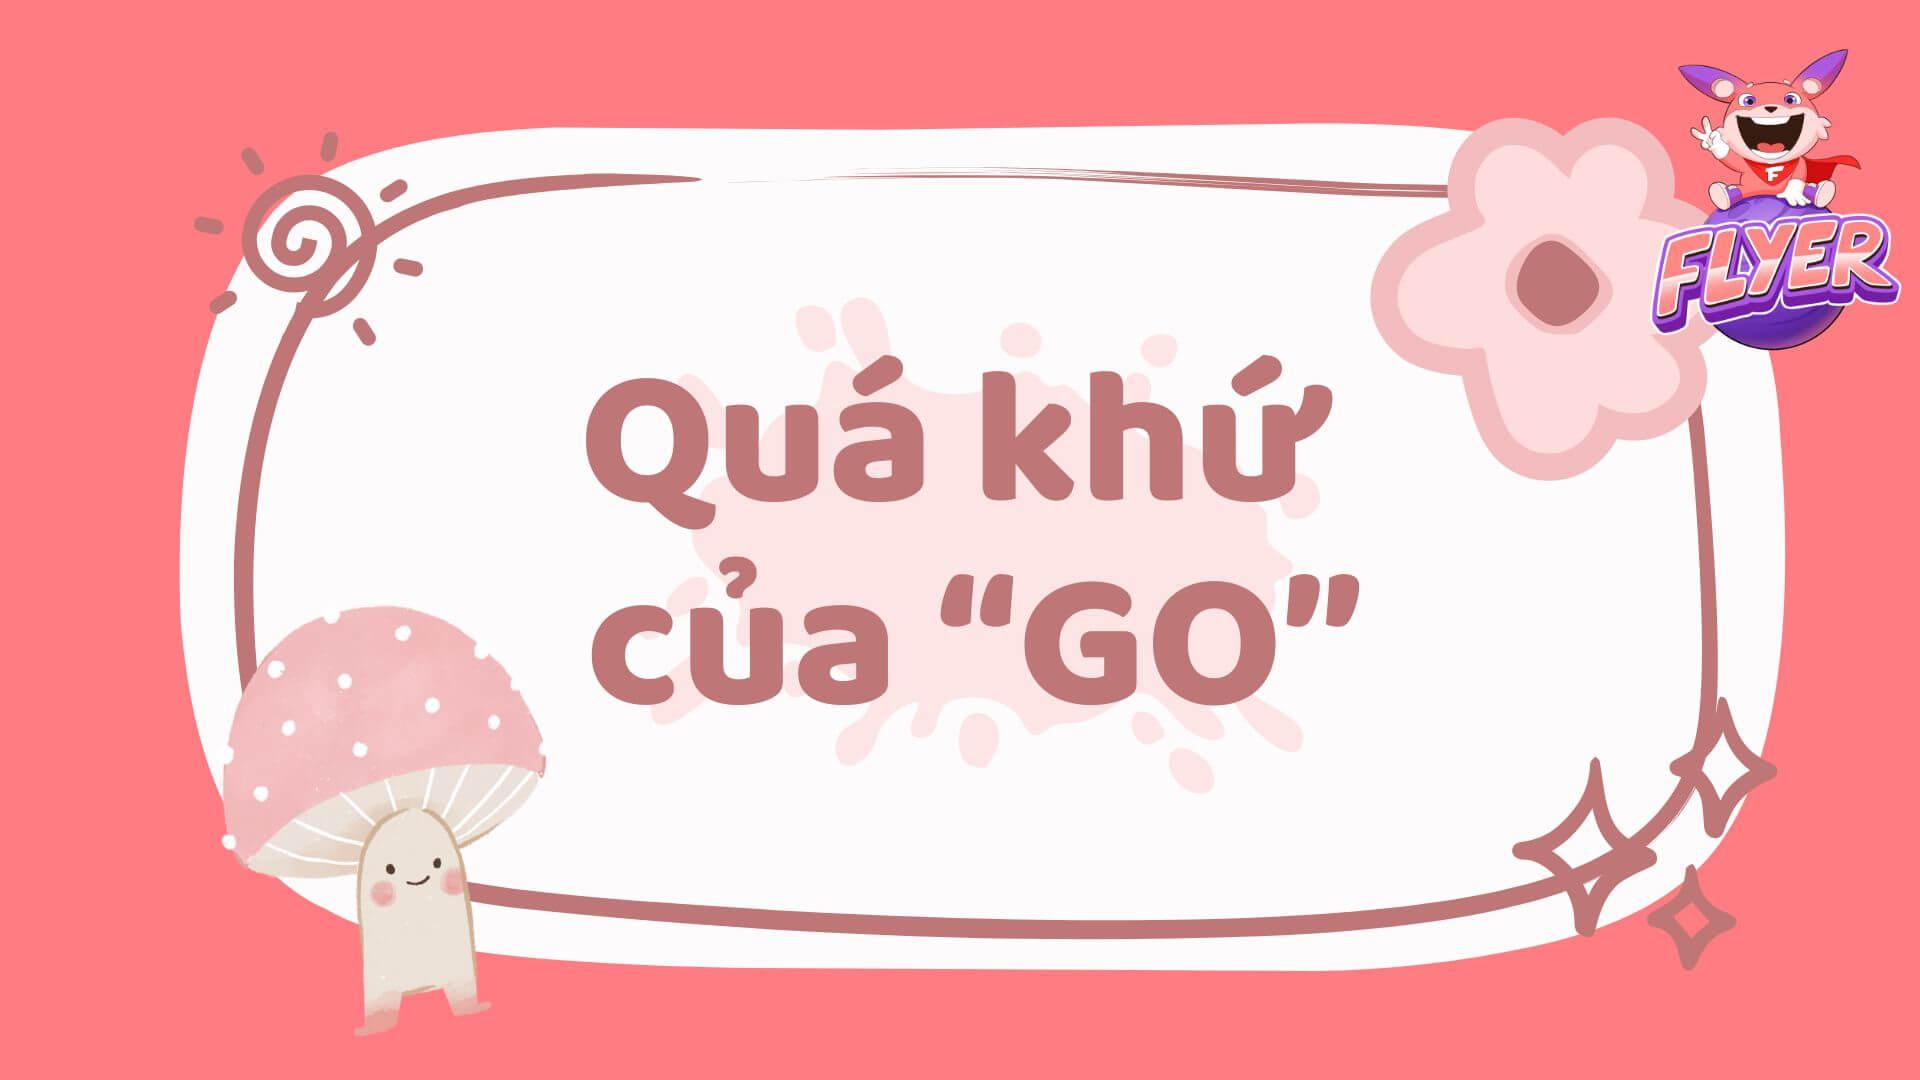 Quá khứ của “go” là gì? Hướng dẫn chi tiết cách chia động từ “go” ở 4 thì quá khứ trong tiếng Anh